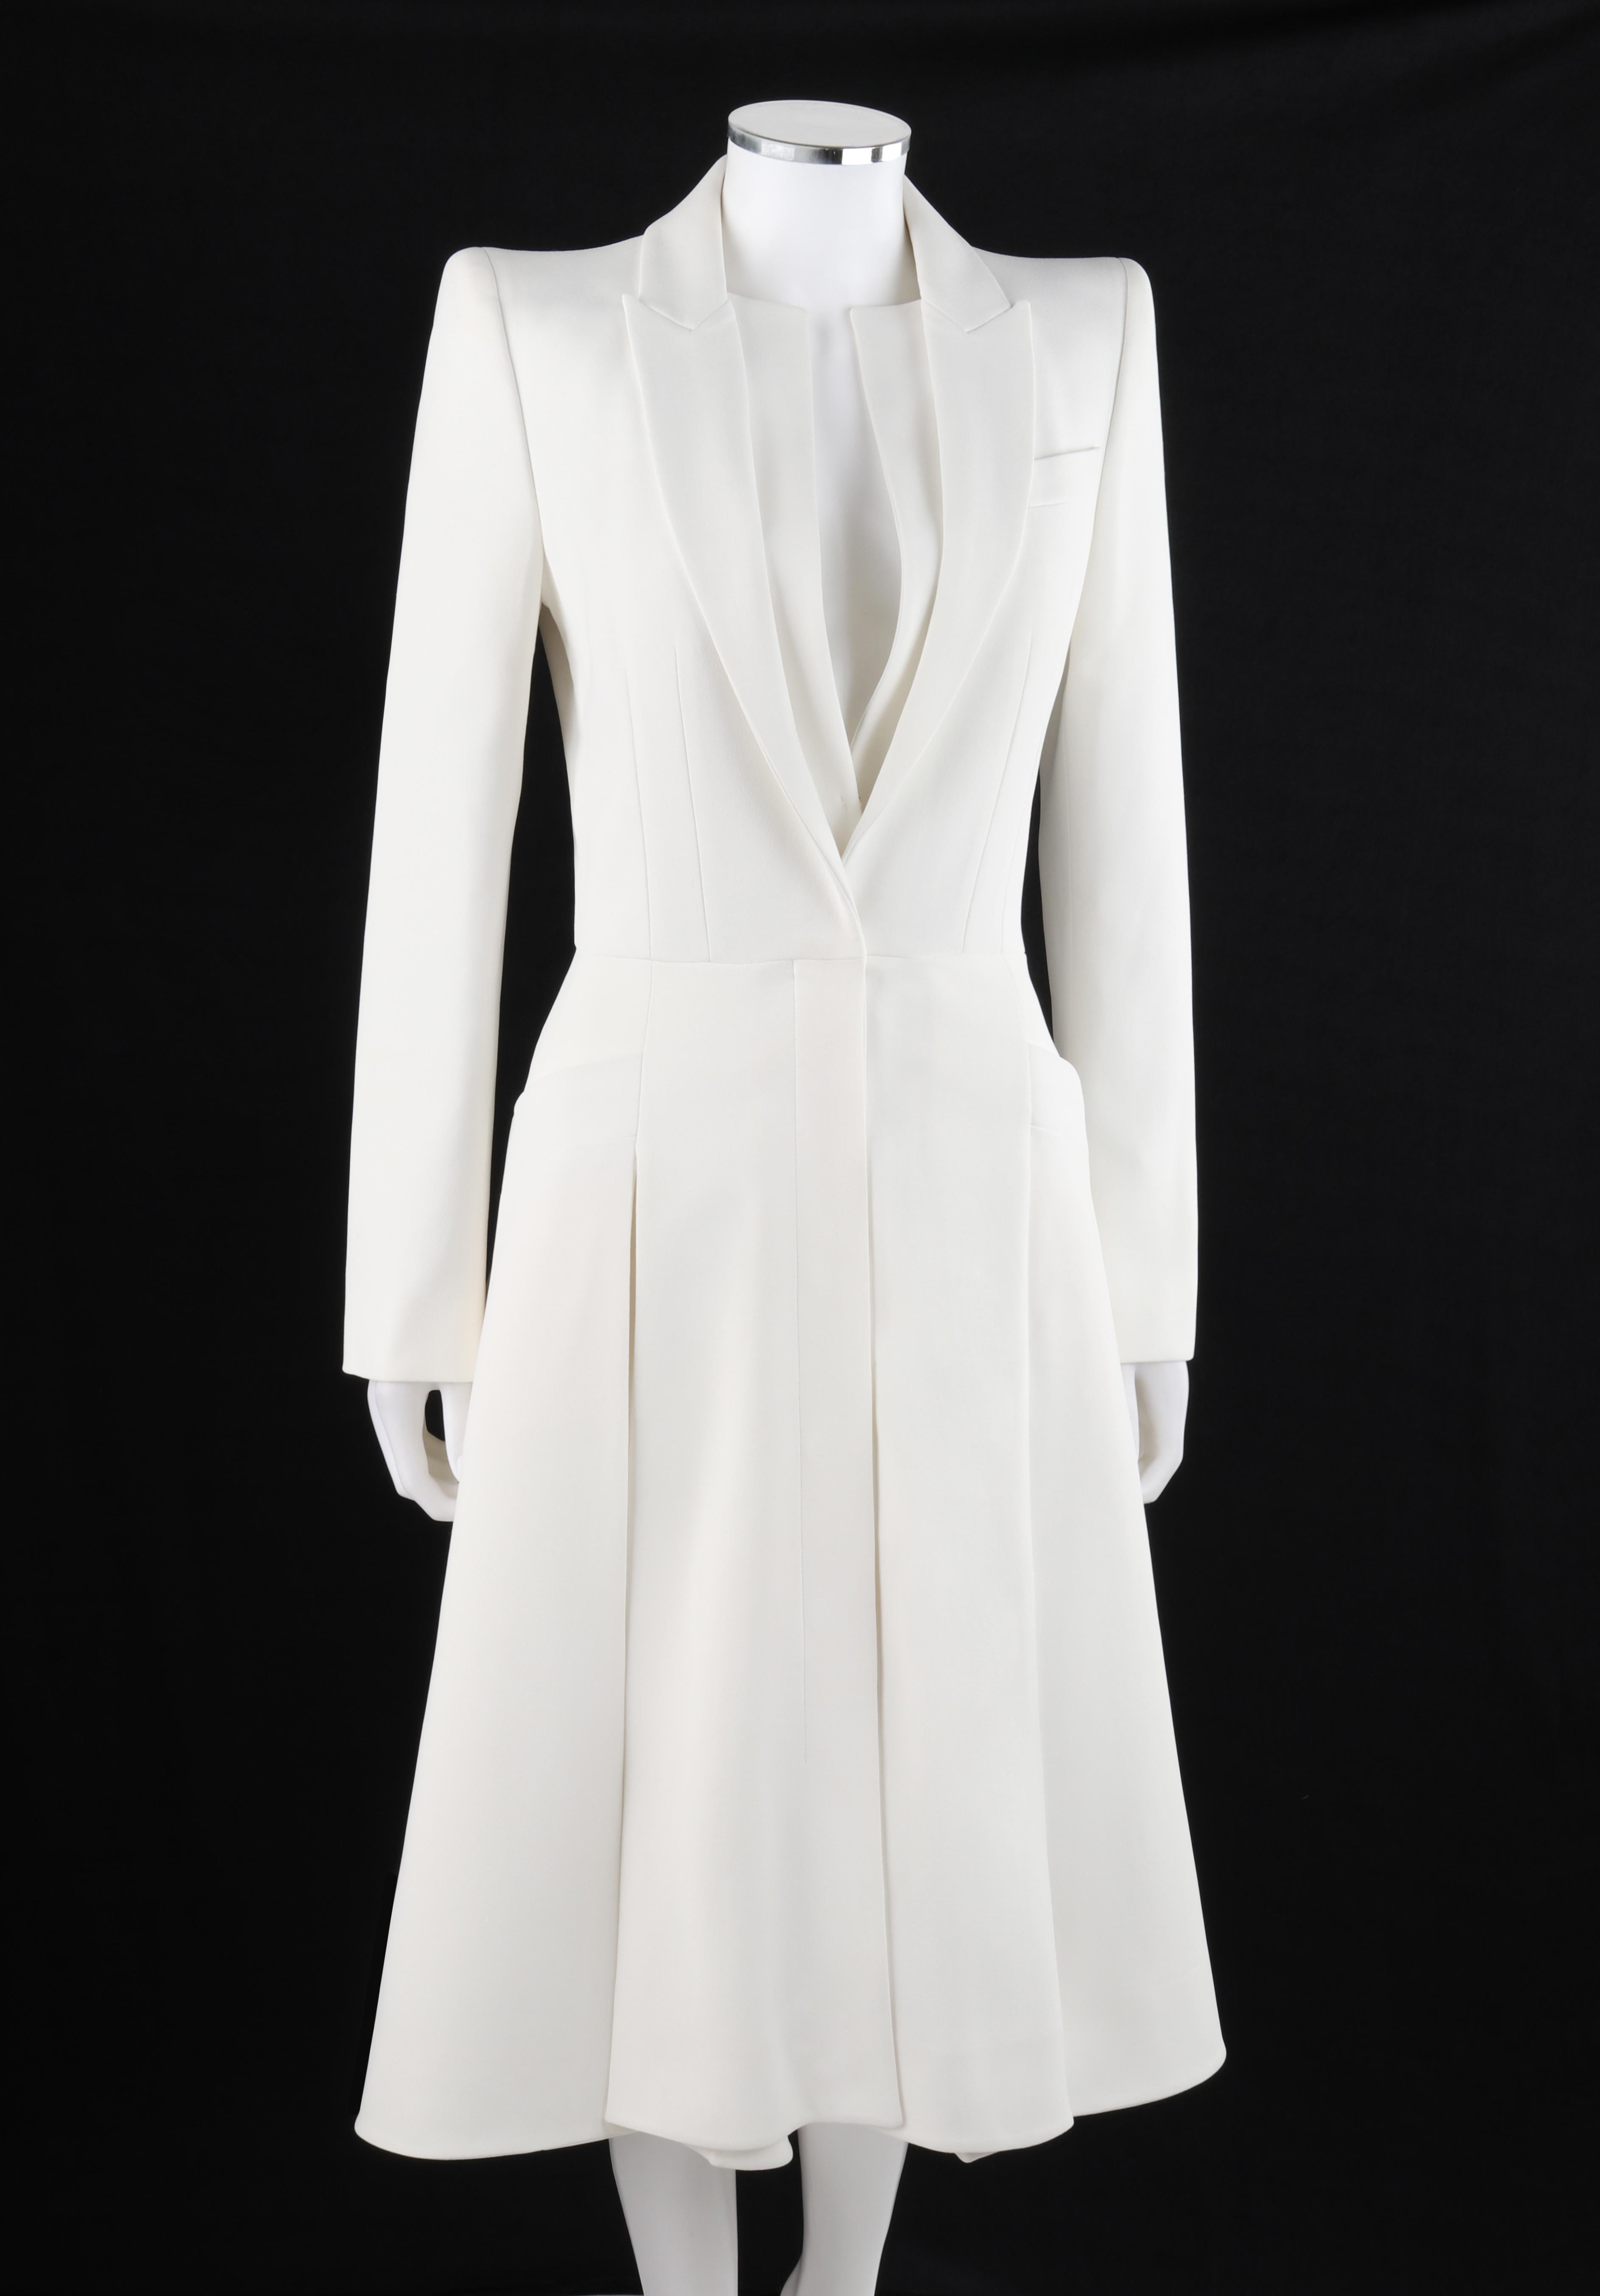 alexander mcqueen white coat dress